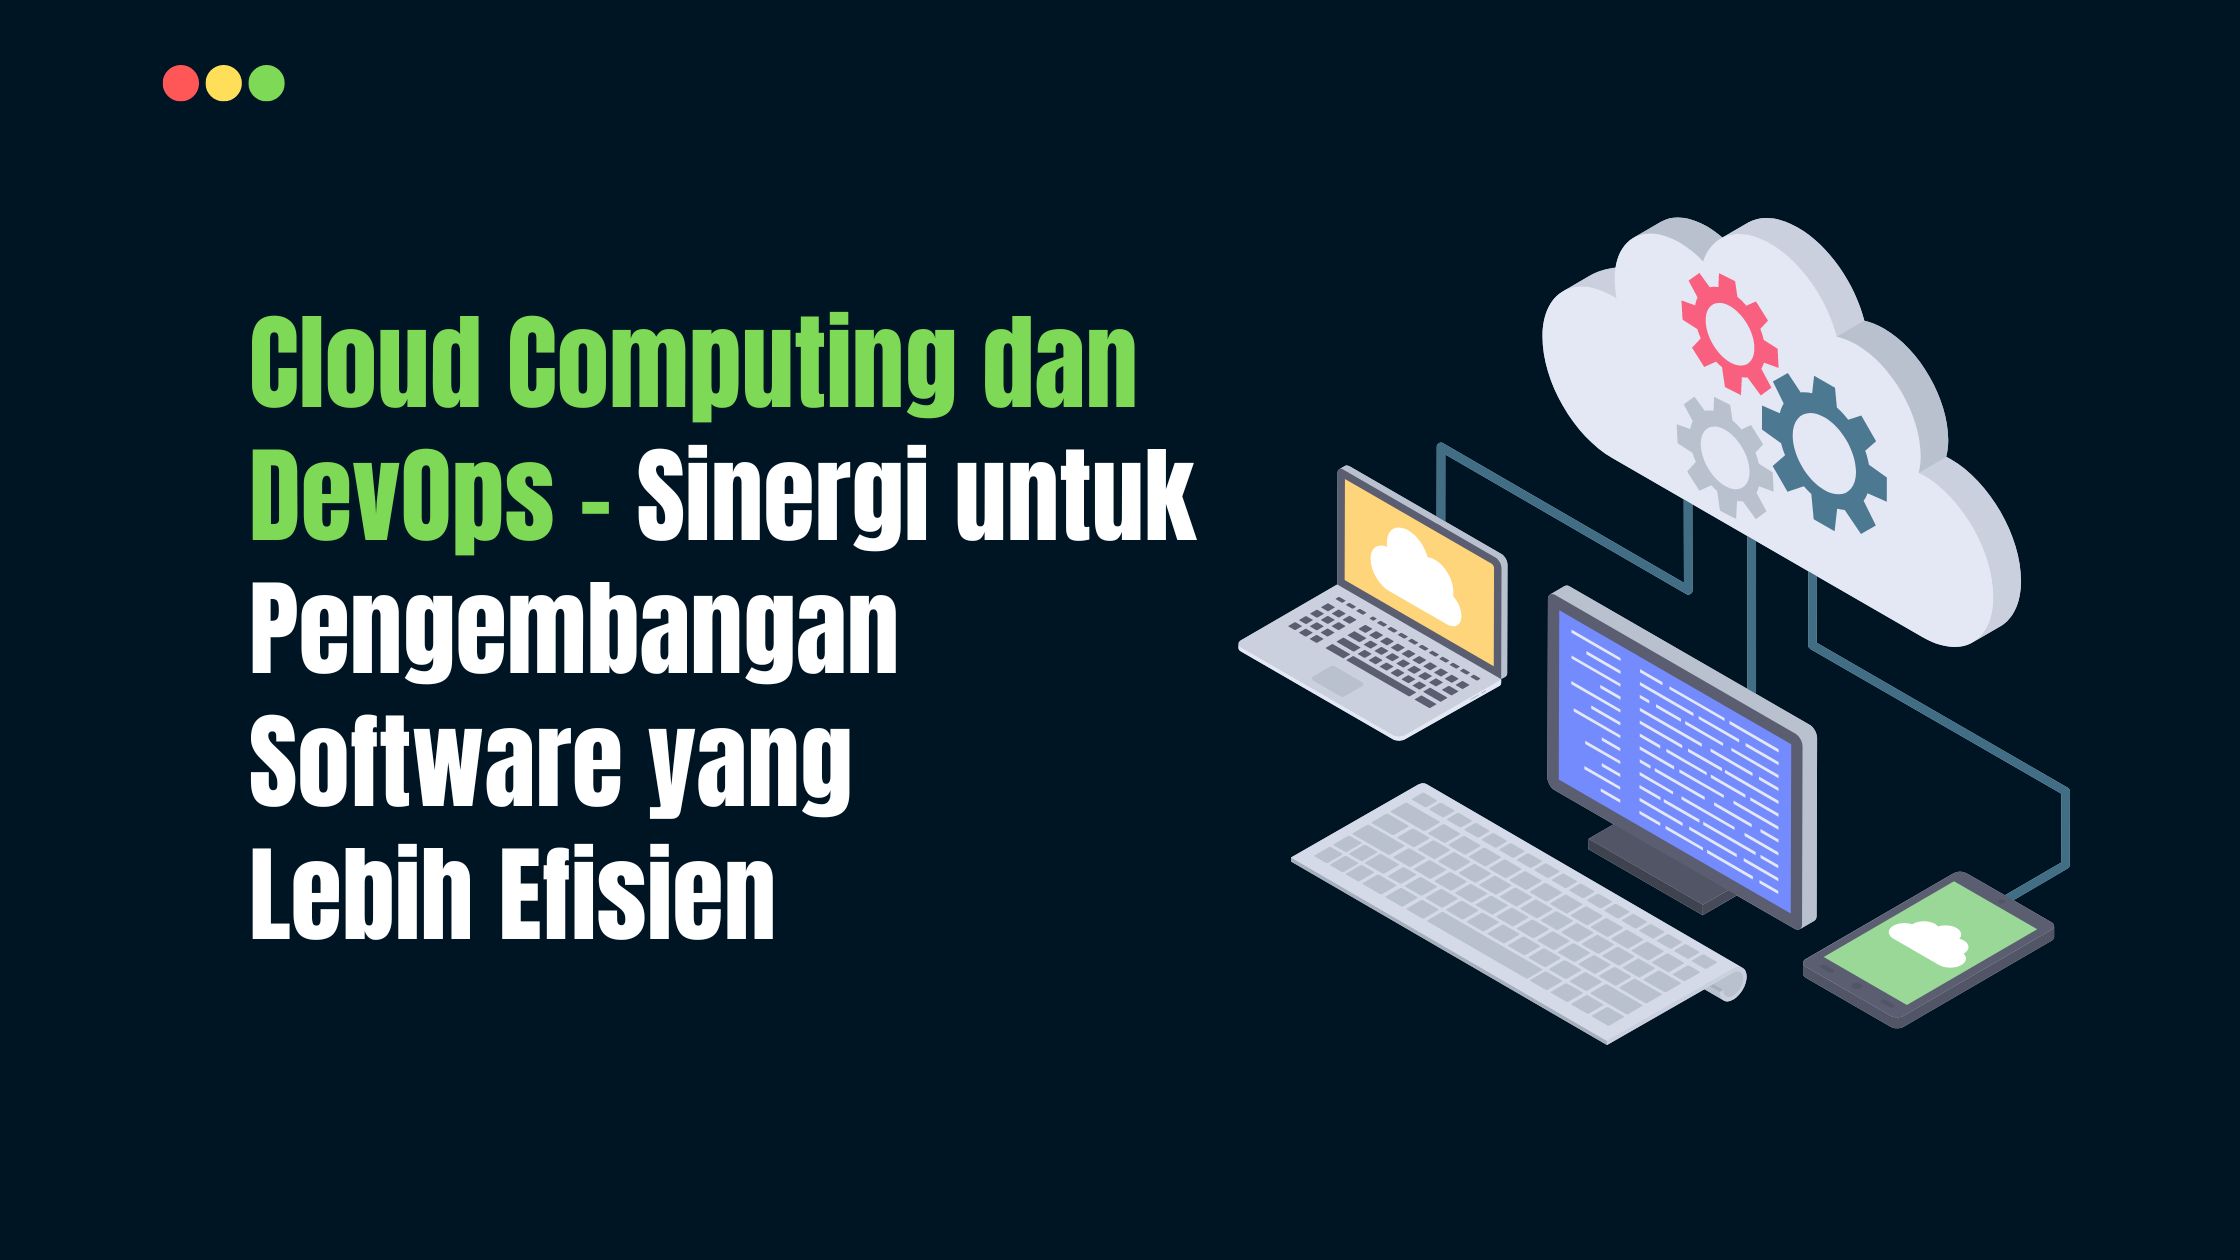 Cloud Computing dan DevOps: Sinergi untuk Pengembangan Software